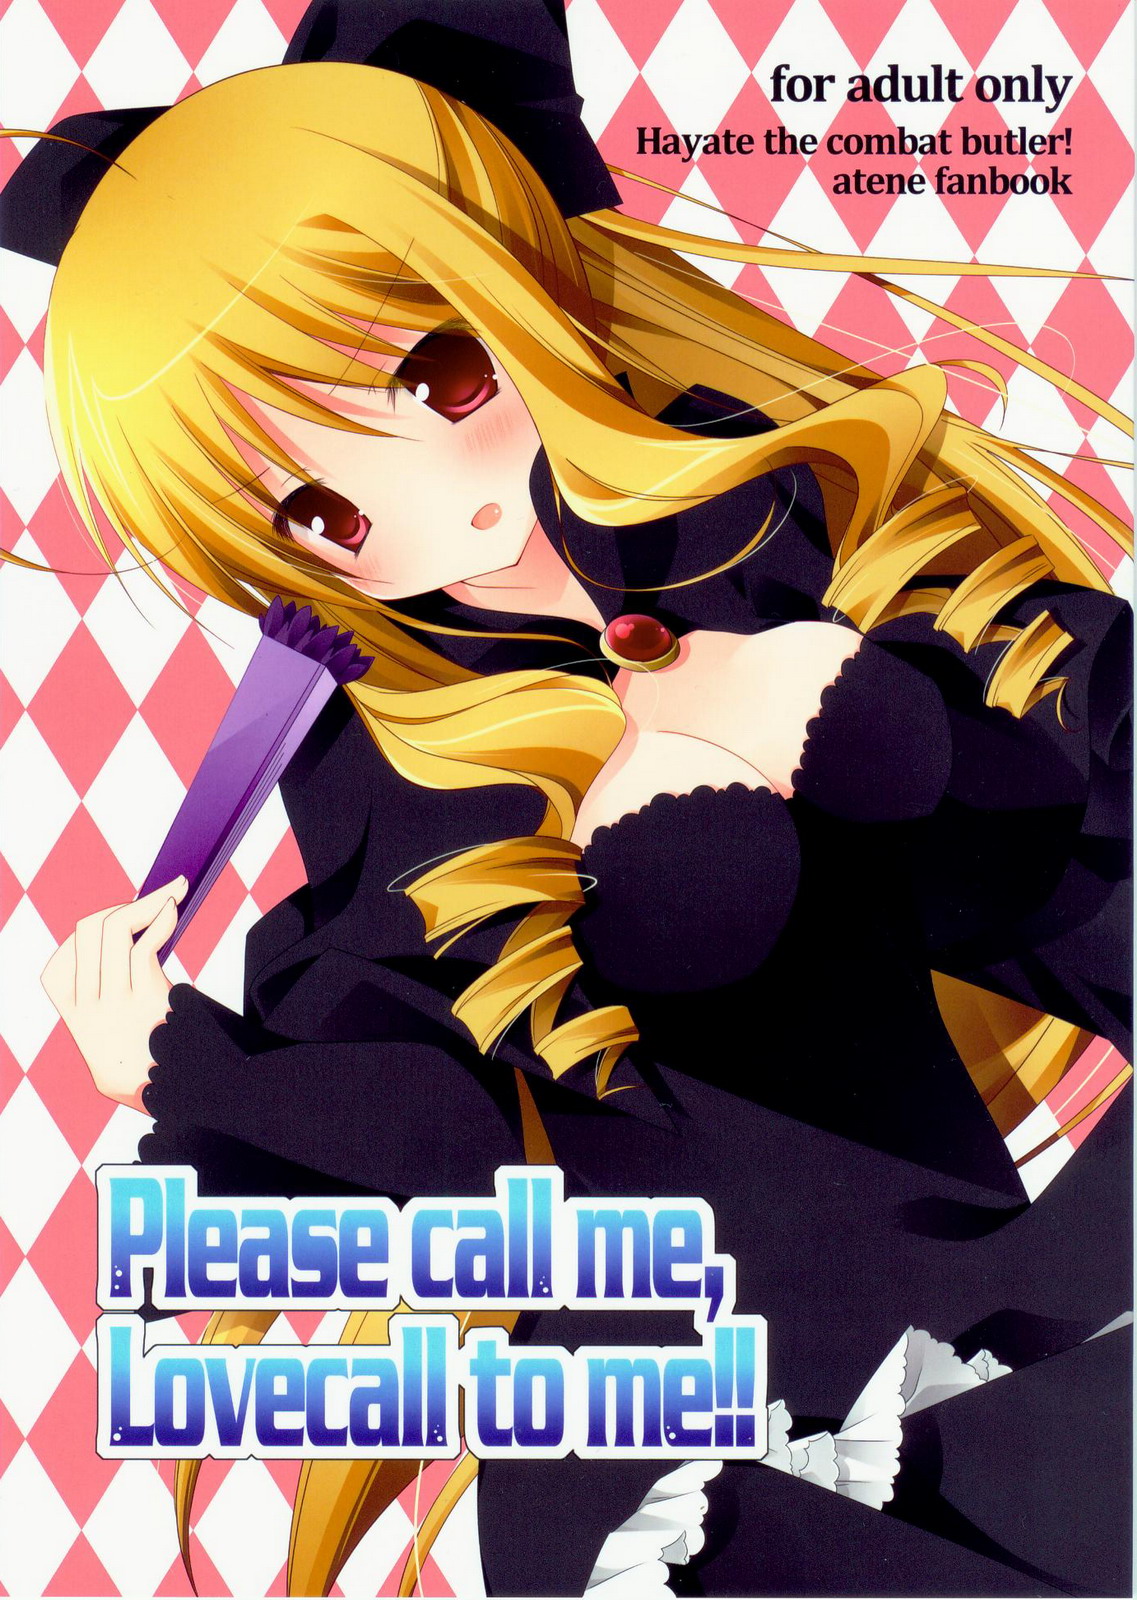 [Aiiro Jikan] Please call me, Lovecall to me!! (Hayate no gotoku!) [藍色時間] Please call me, Lovecall to me!! (ハヤテのごとく！)